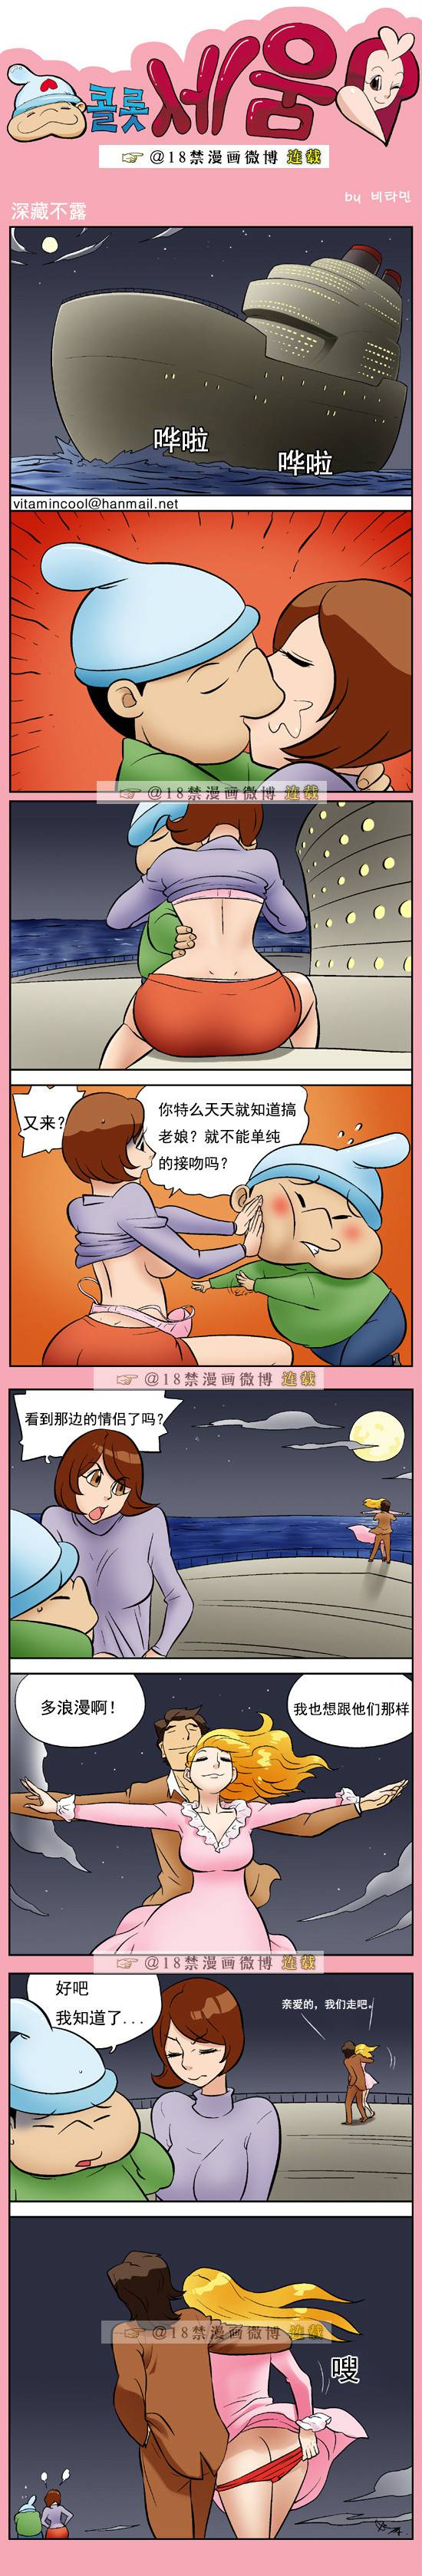 邪恶漫画爆笑囧图第371刊：新故事